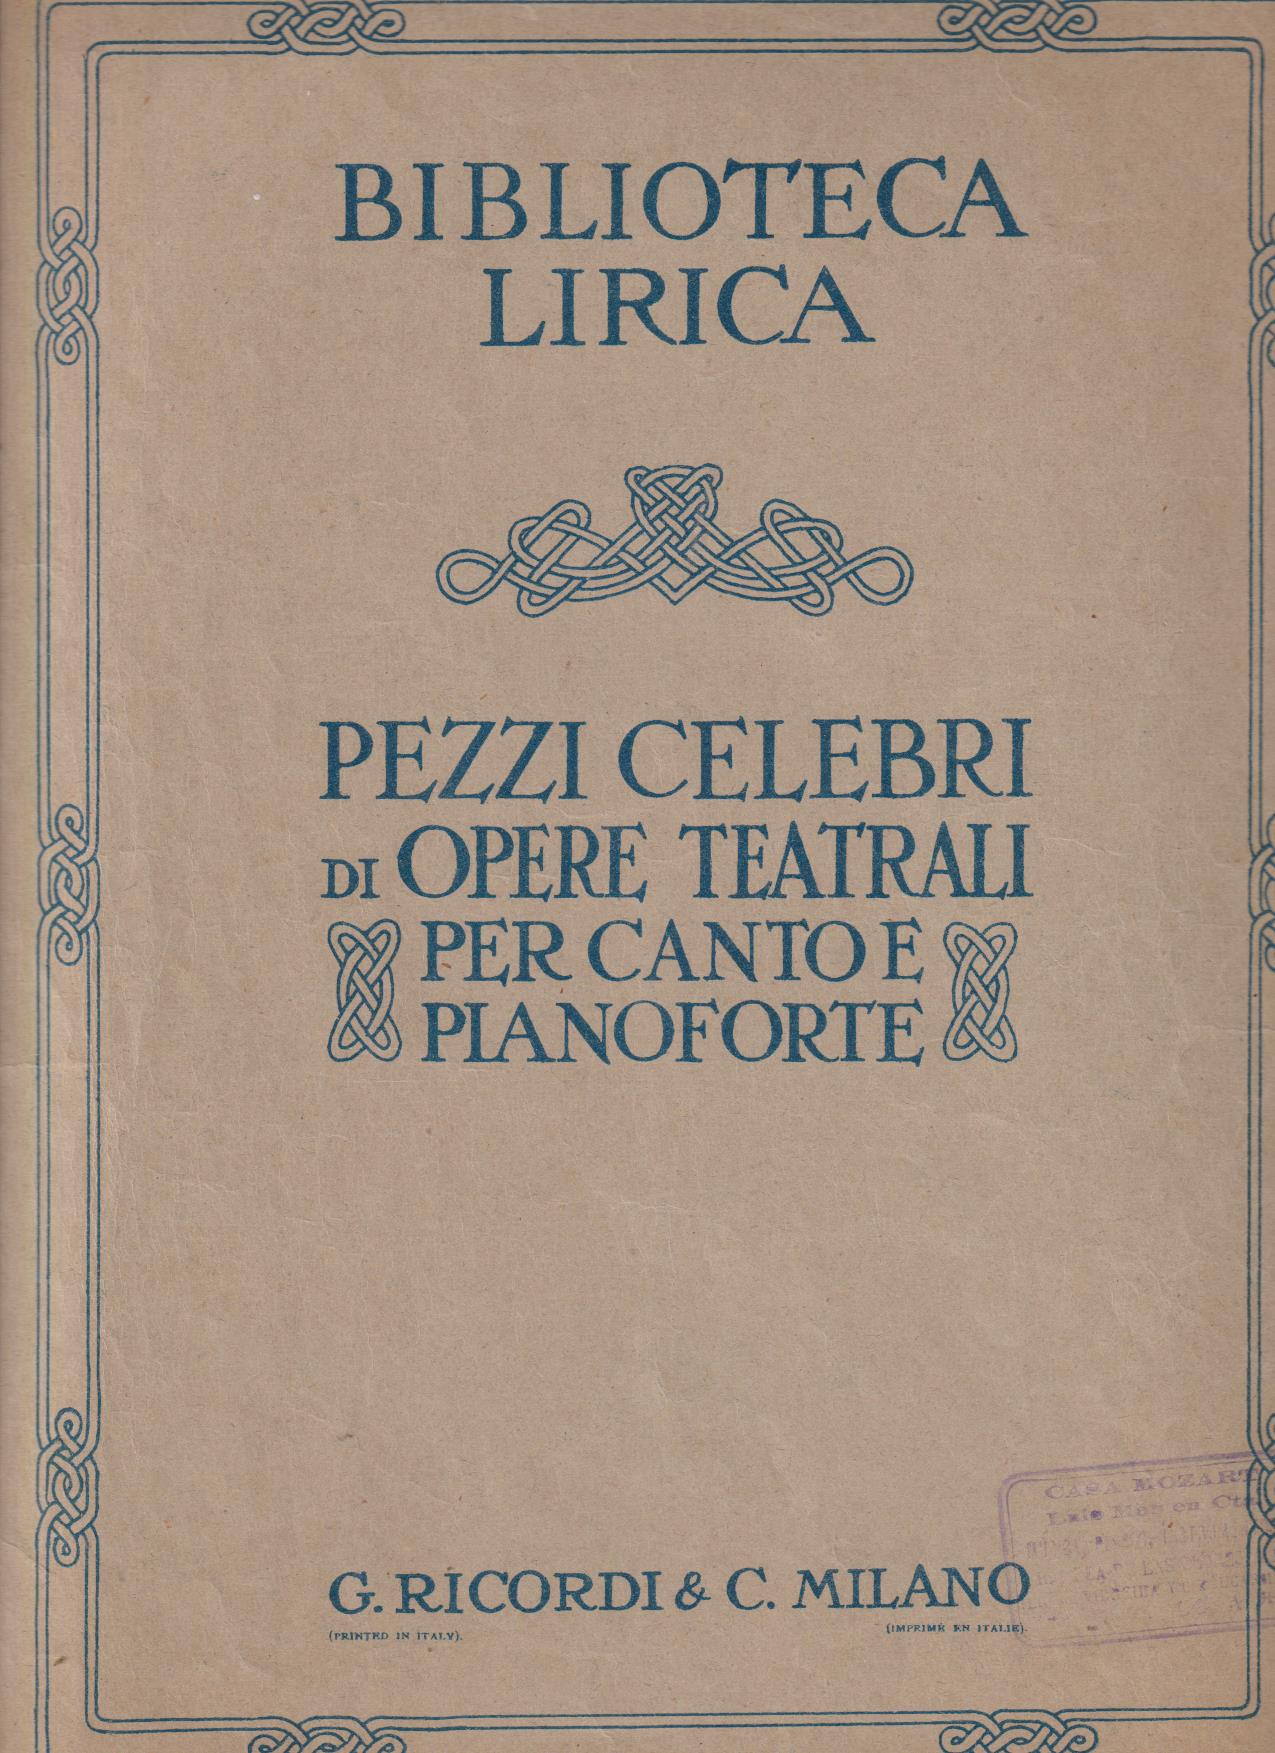 Biblioteca Lírica. Pezzi Celegri di Opere Teatrali Le Nozze di fígaro di Mozart (31x24) 4 páginas